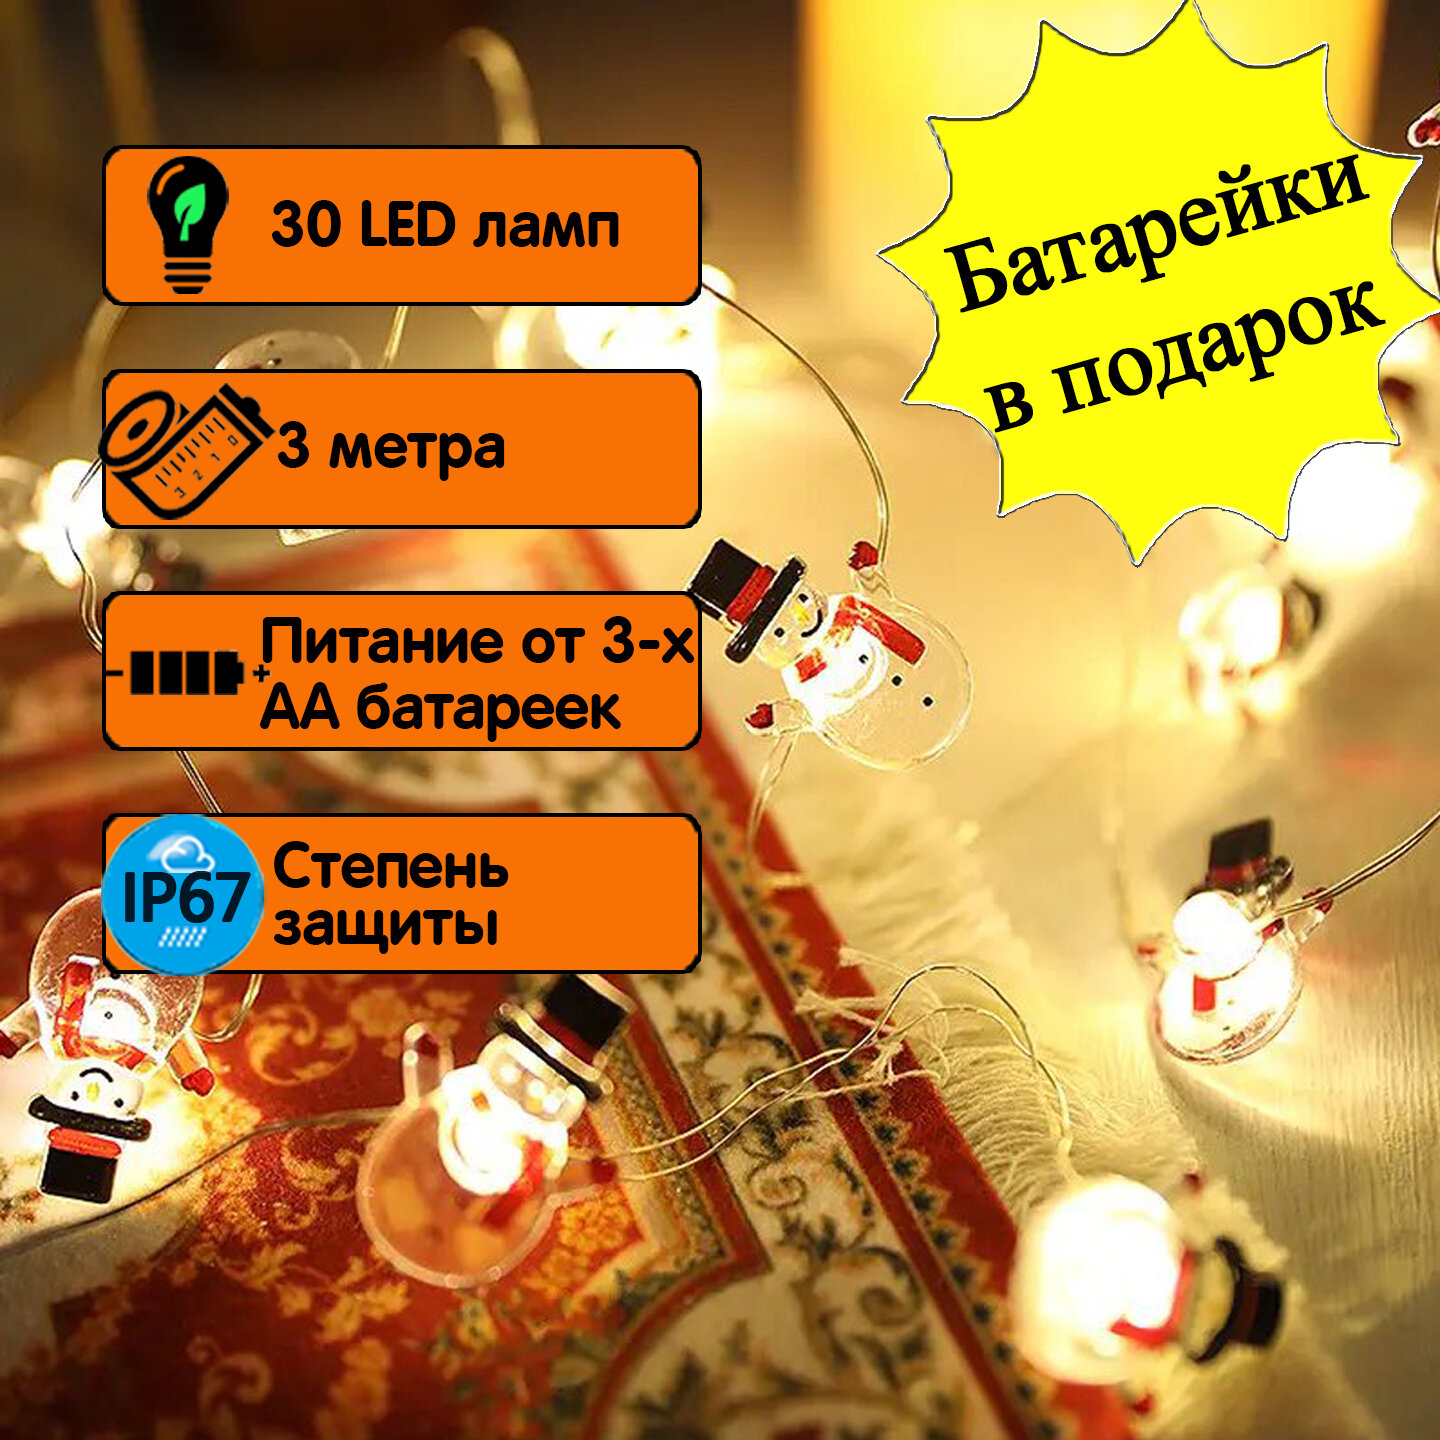 Светодиодная новогодняя гирлянда "Cнеговики", 3 м, 30 ламп, питание от АА-батареек